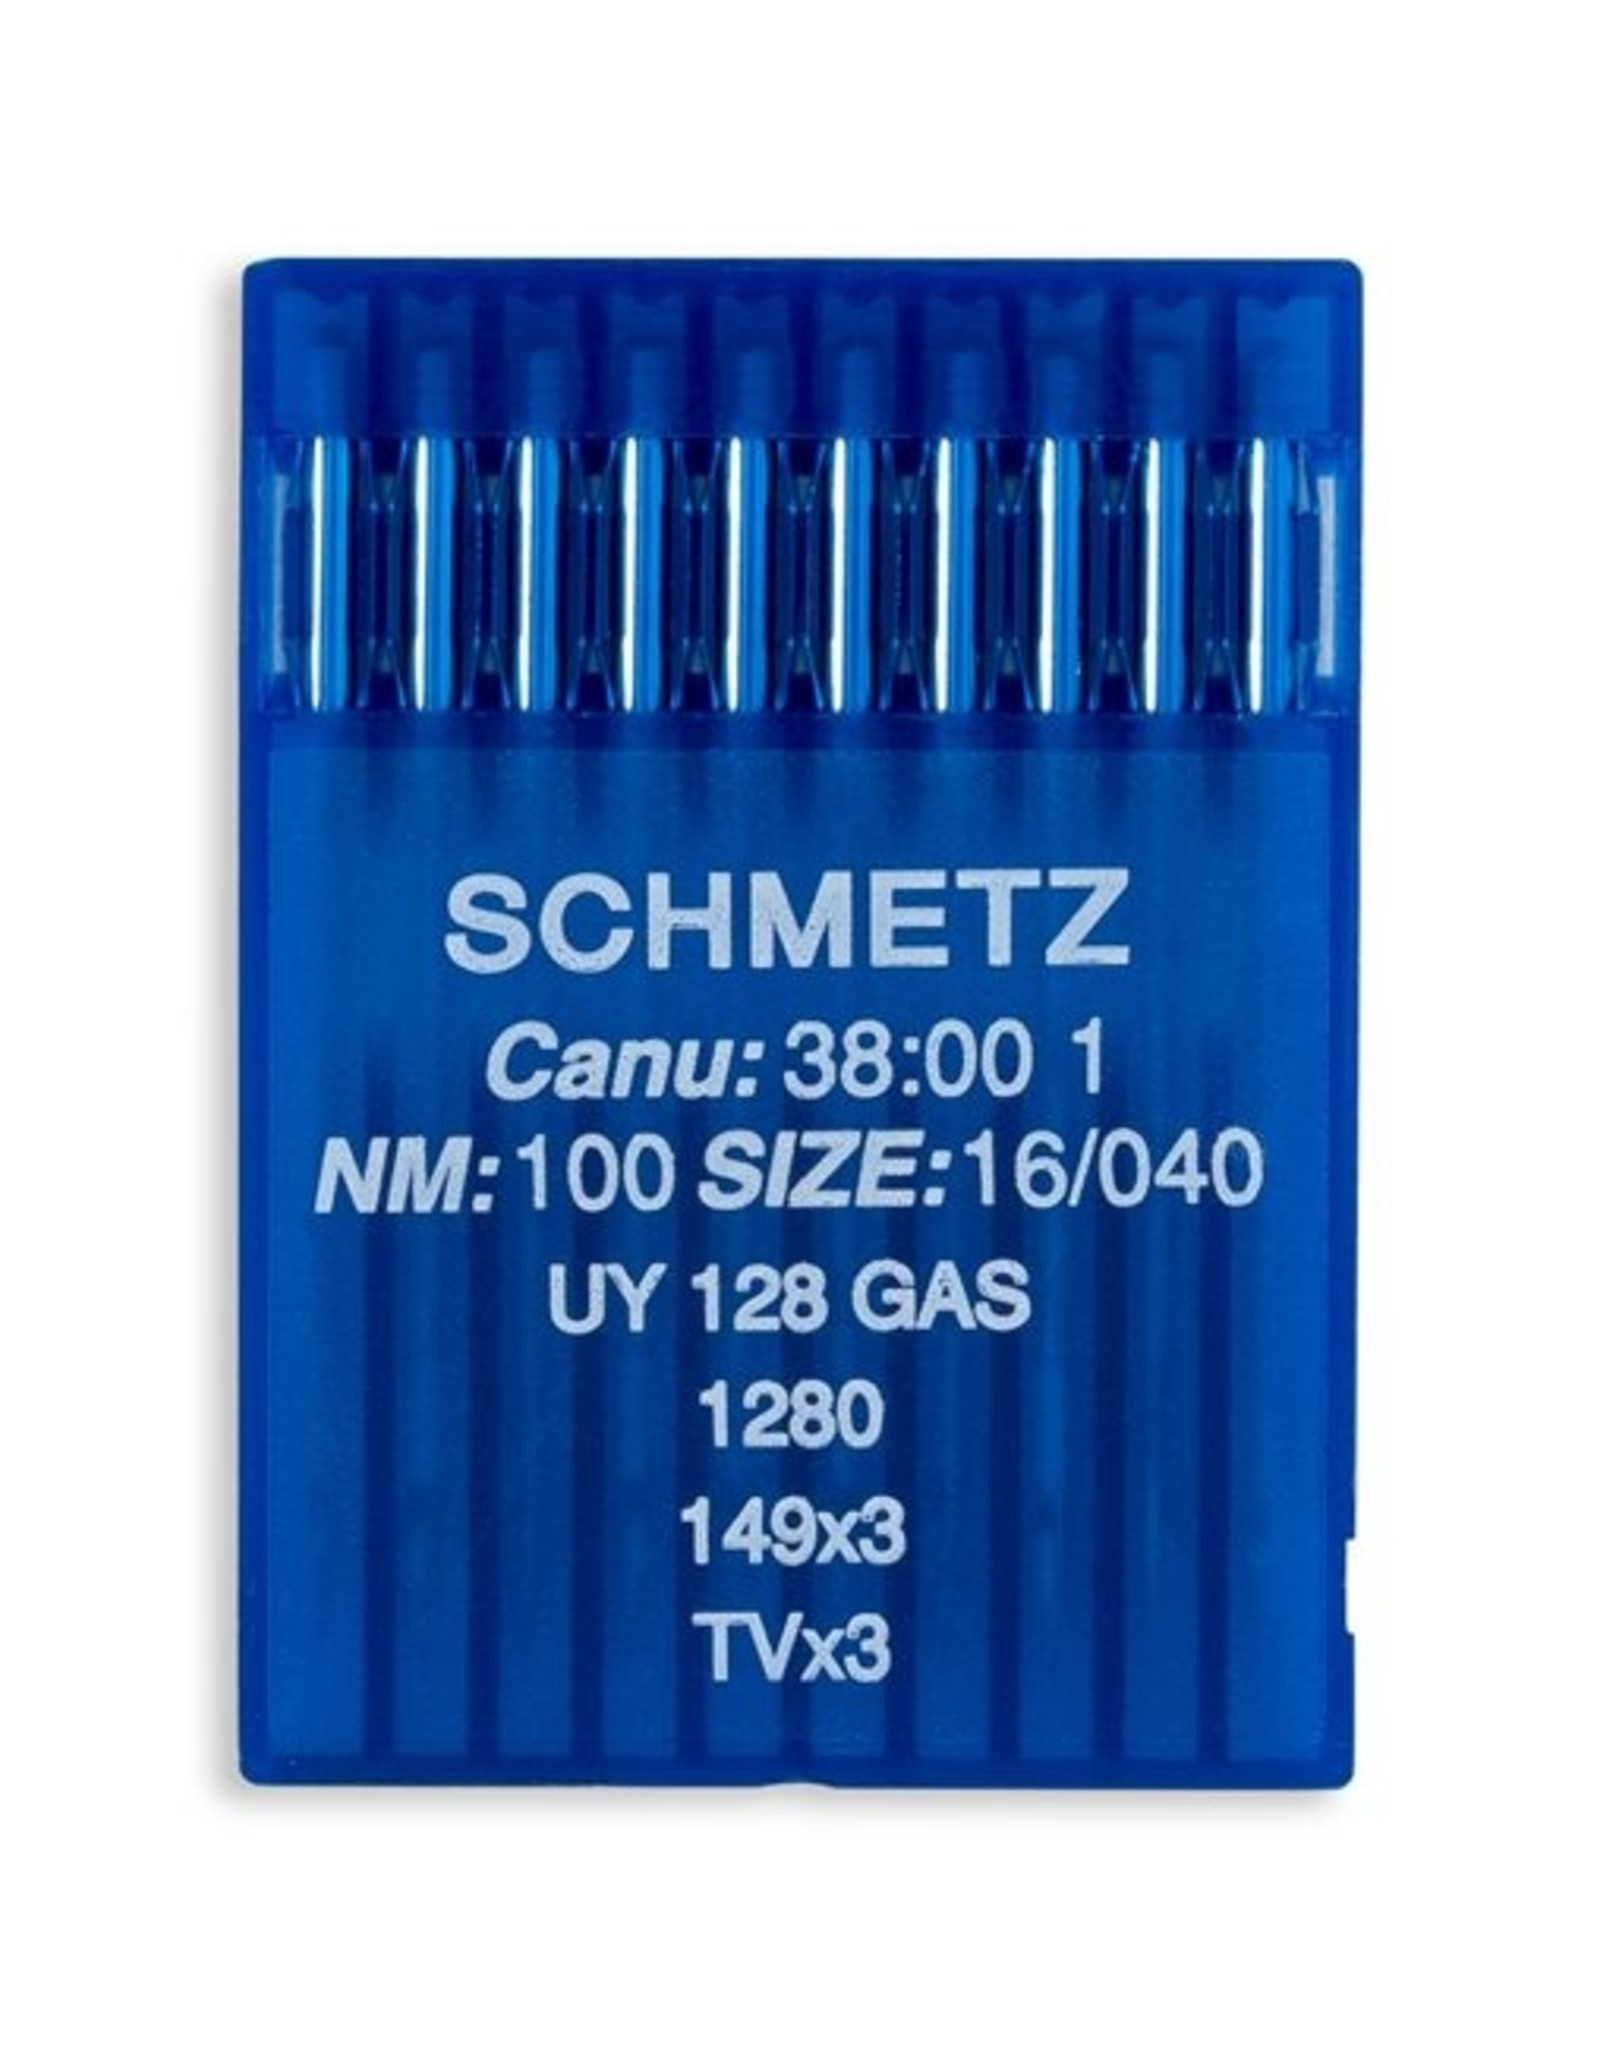 Schmetz industrial - 149x3 - TVx3 - 38:00 (size 100/16)